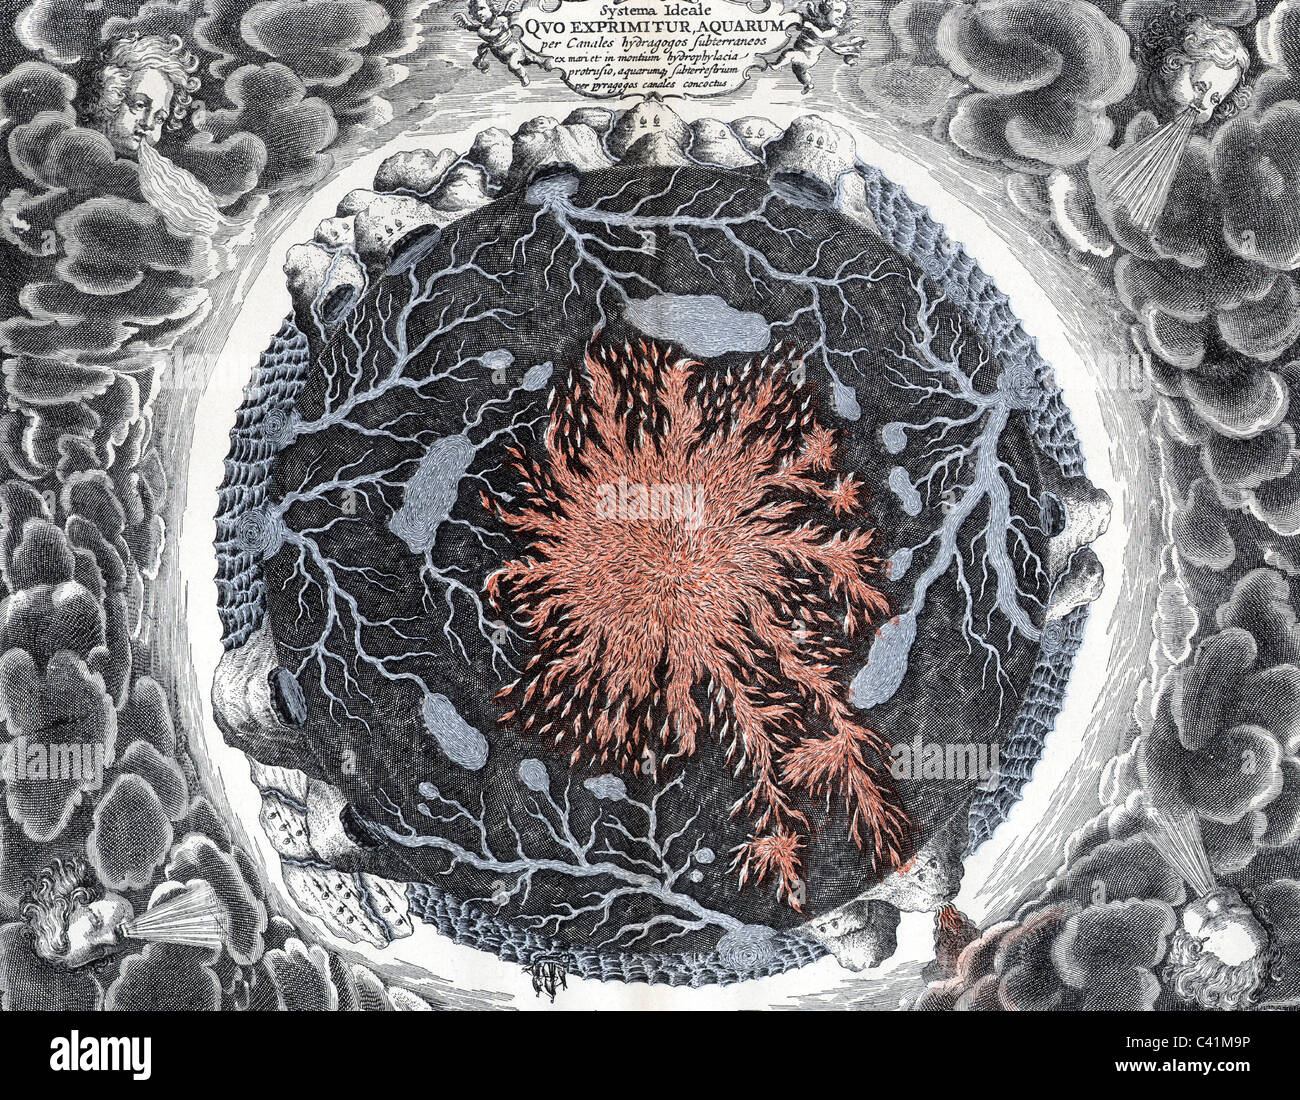 Scienza, geologia, fuoco centrale con laghi e fiumi del mondo sotterraneo, 'Mundus subterraneus', di Athanasius Kircher, 1665, diritti aggiuntivi-clearences-non disponibile Foto Stock